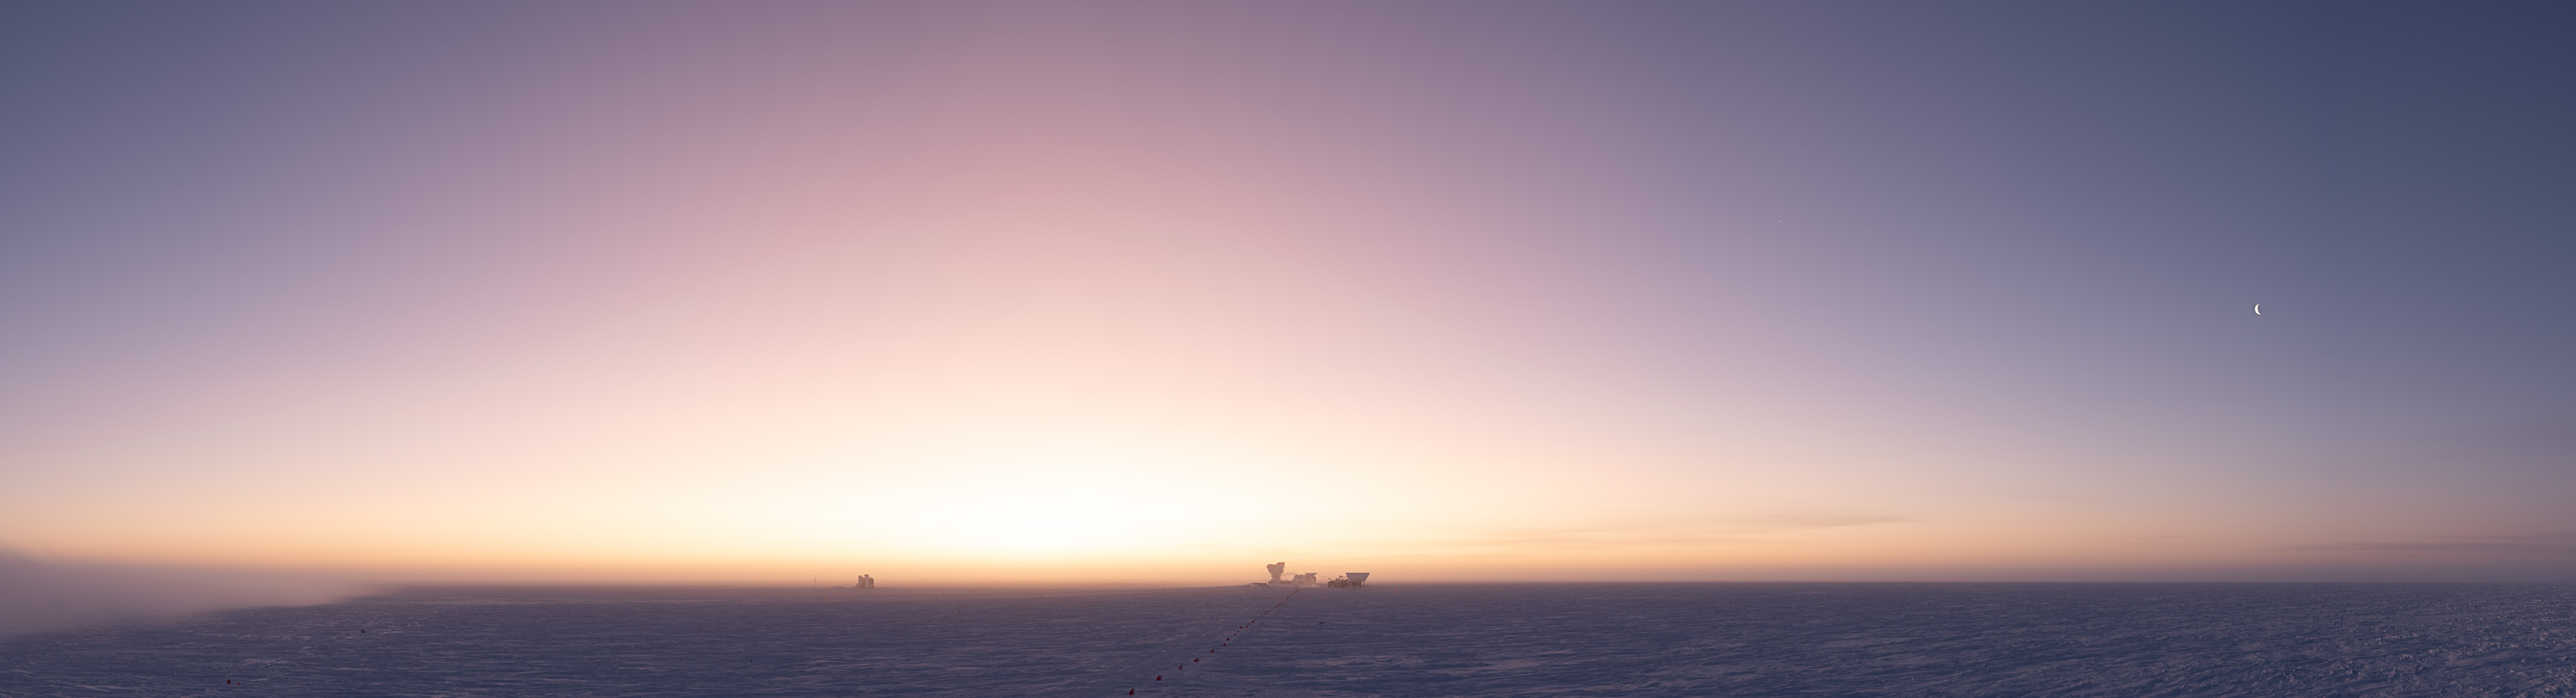 Sunrise over a frozen landscape.